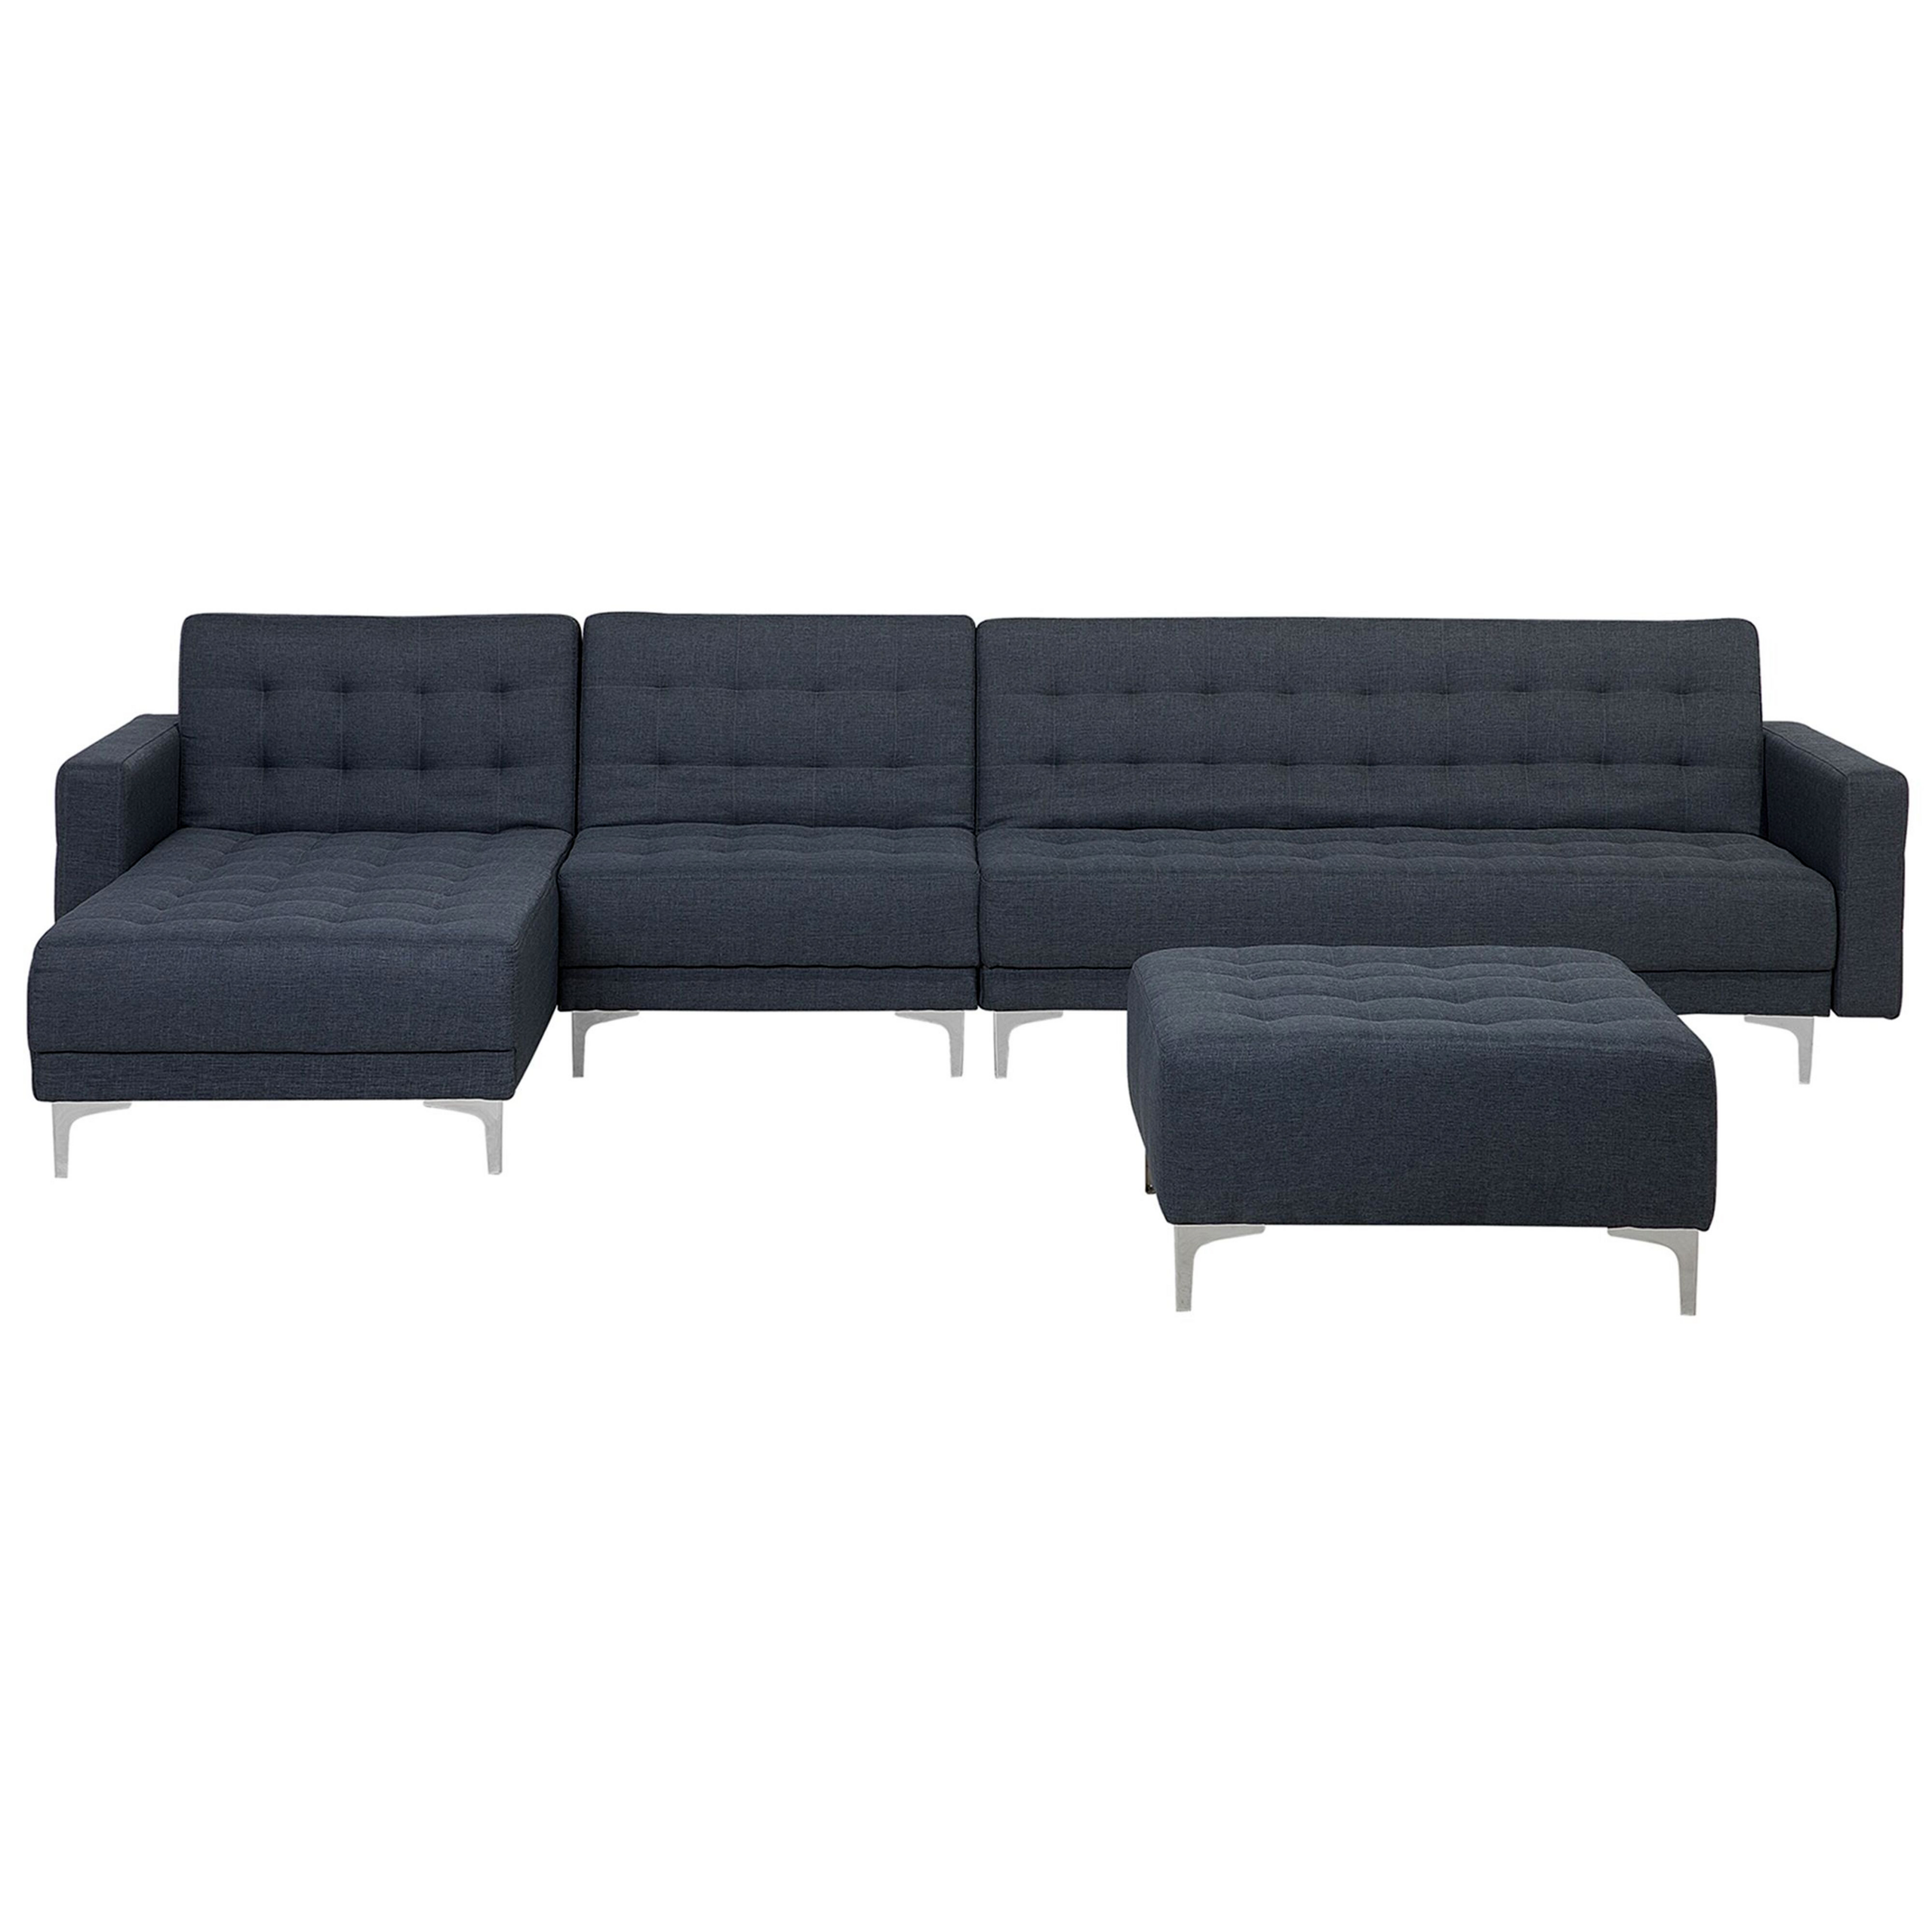 beliani divano letto angolare in tessuto capitonnè grigio scuro moderno a l componibile